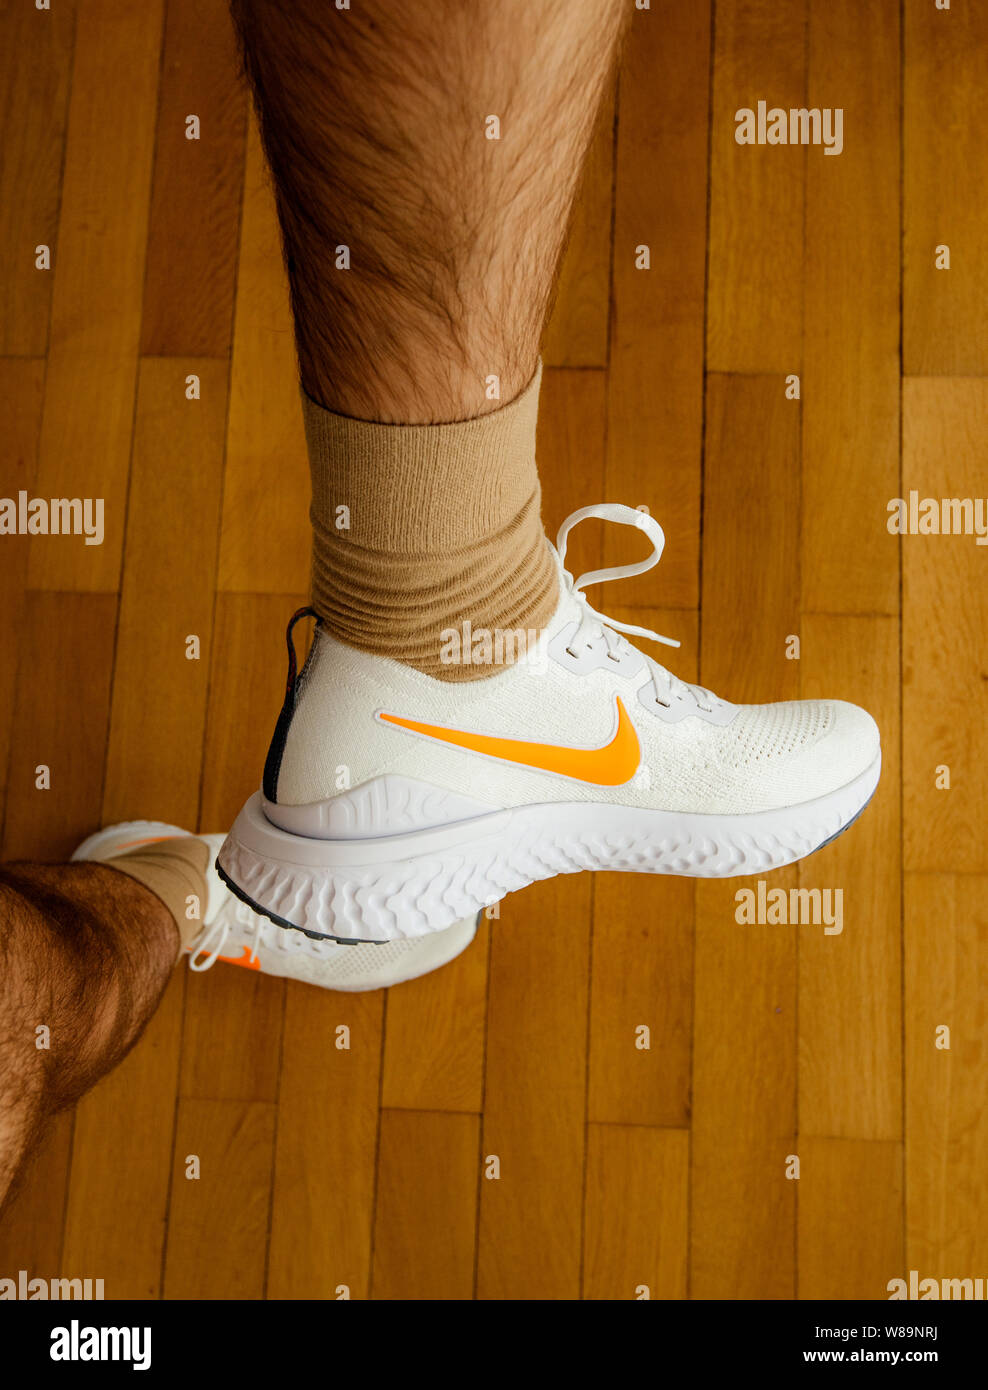 Paris France - 13 juil 2019 : mesure de l'homme nouveau Epic Nike Flyknit  Réagir 2 chaussures de course matériel sur le salon plancher en bois  fabriqués par Nike Sportswear logo blanc